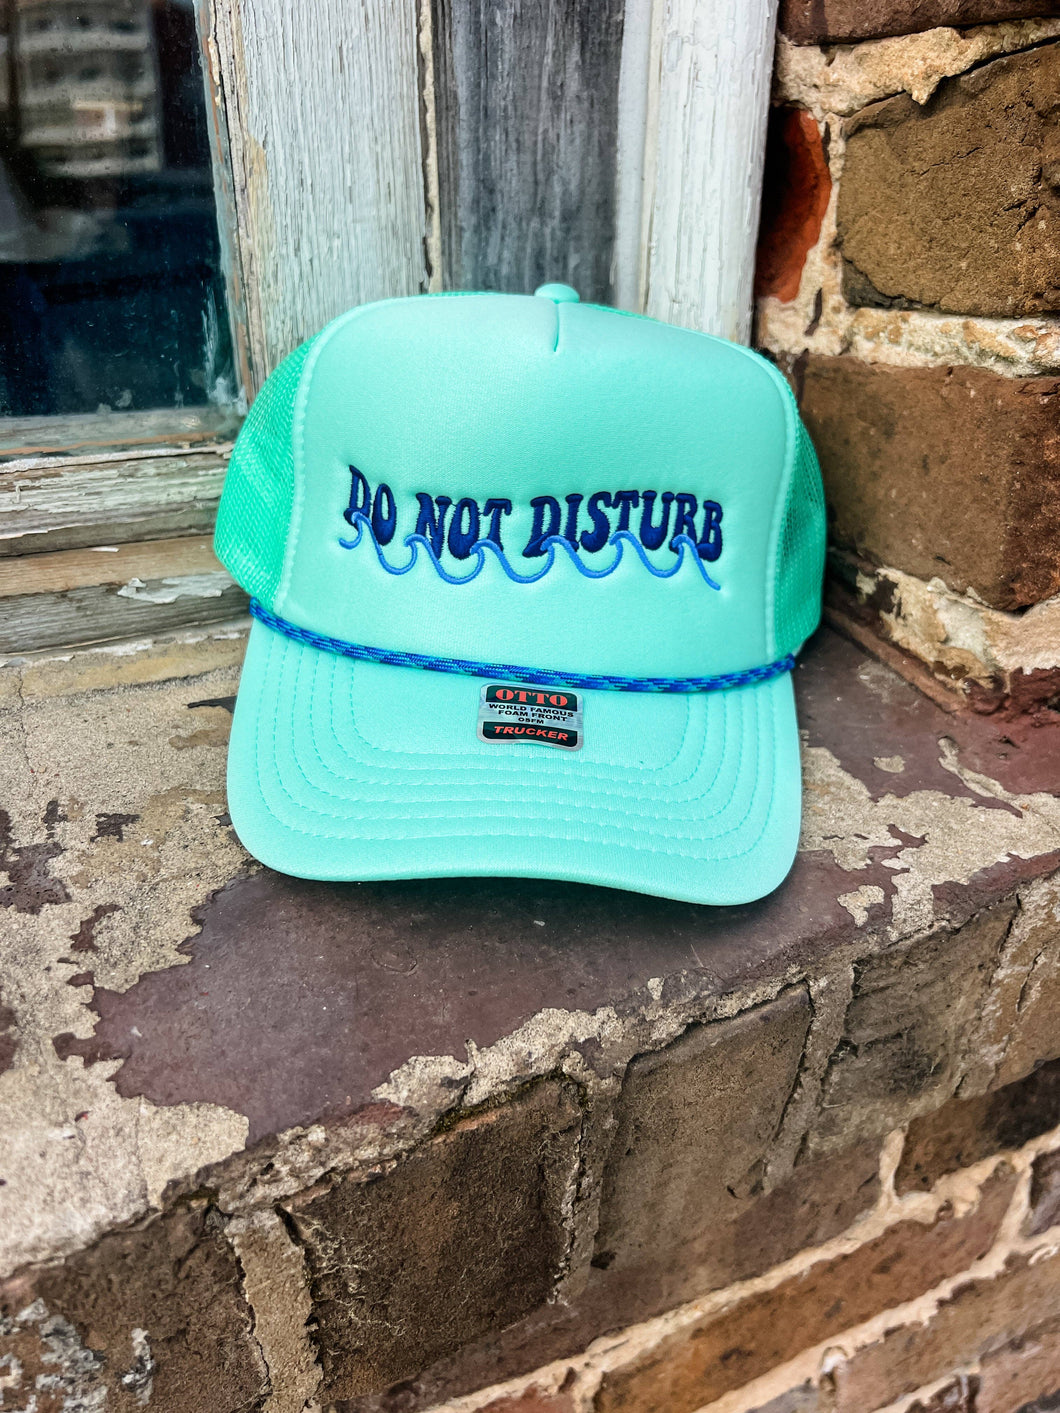 Do Not Disturb Trucker Hat